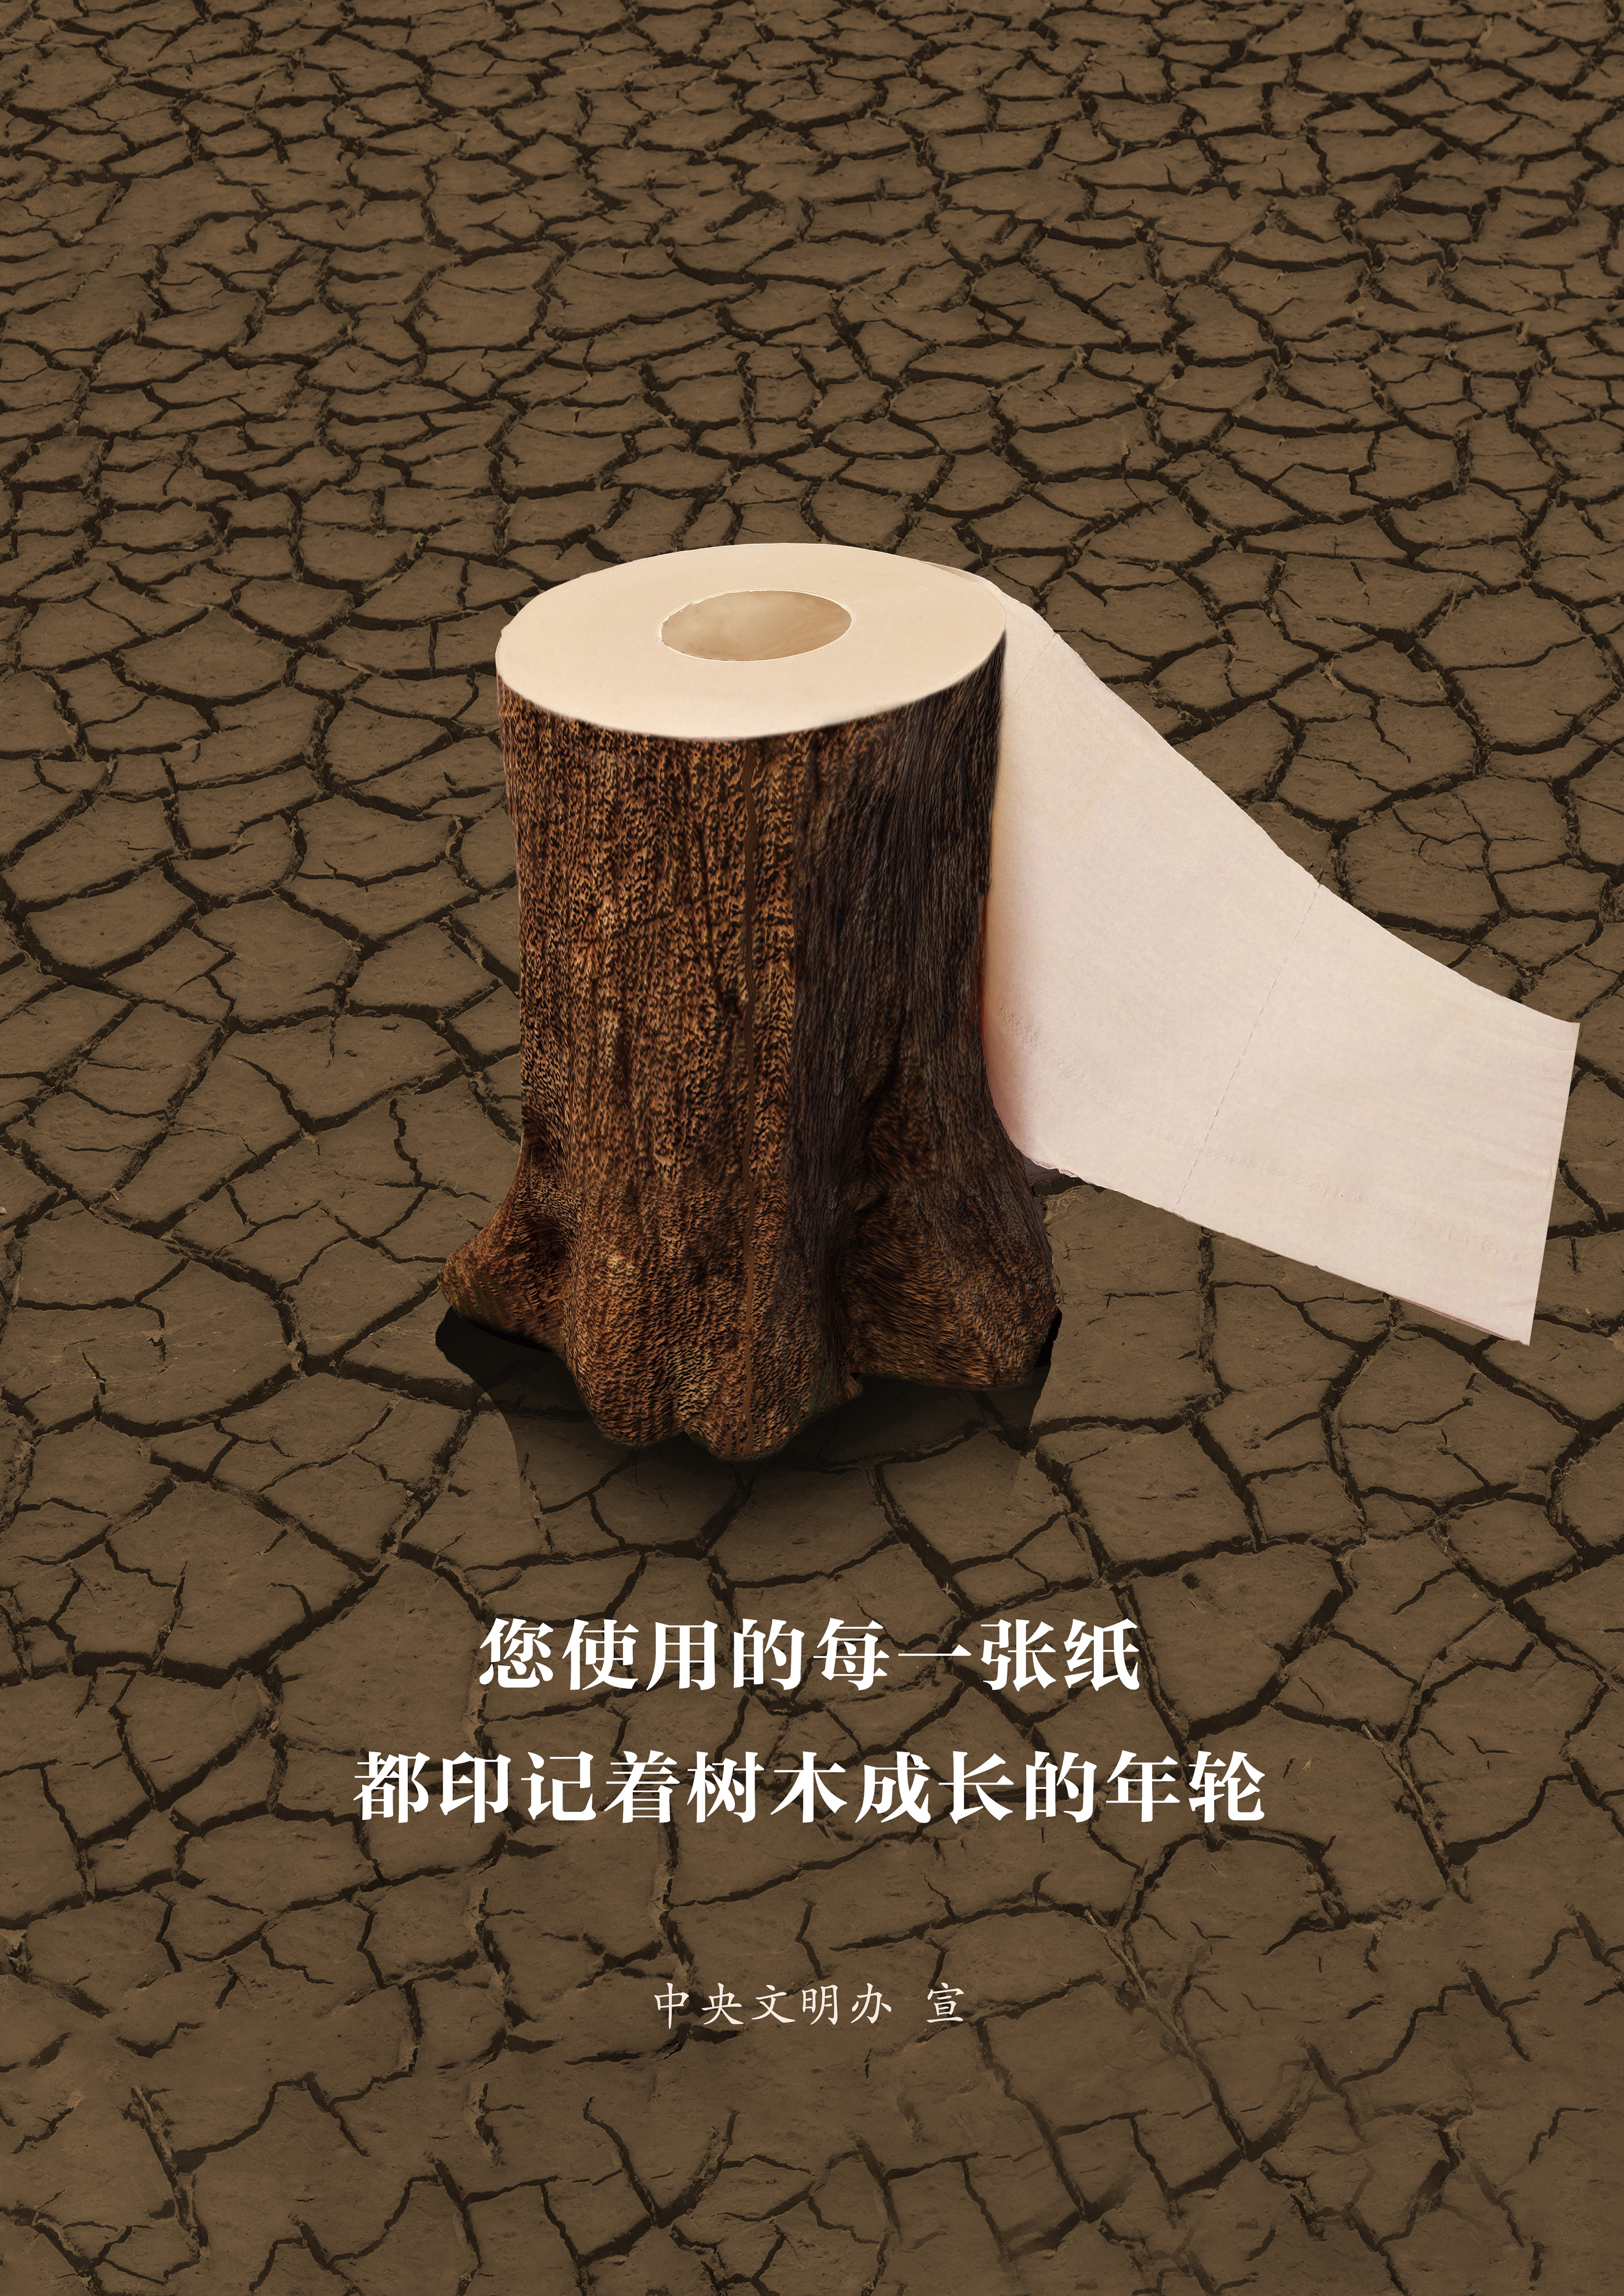 讲文明树新风公益广告：您使用的每一张纸都印记着树木成长的年轮